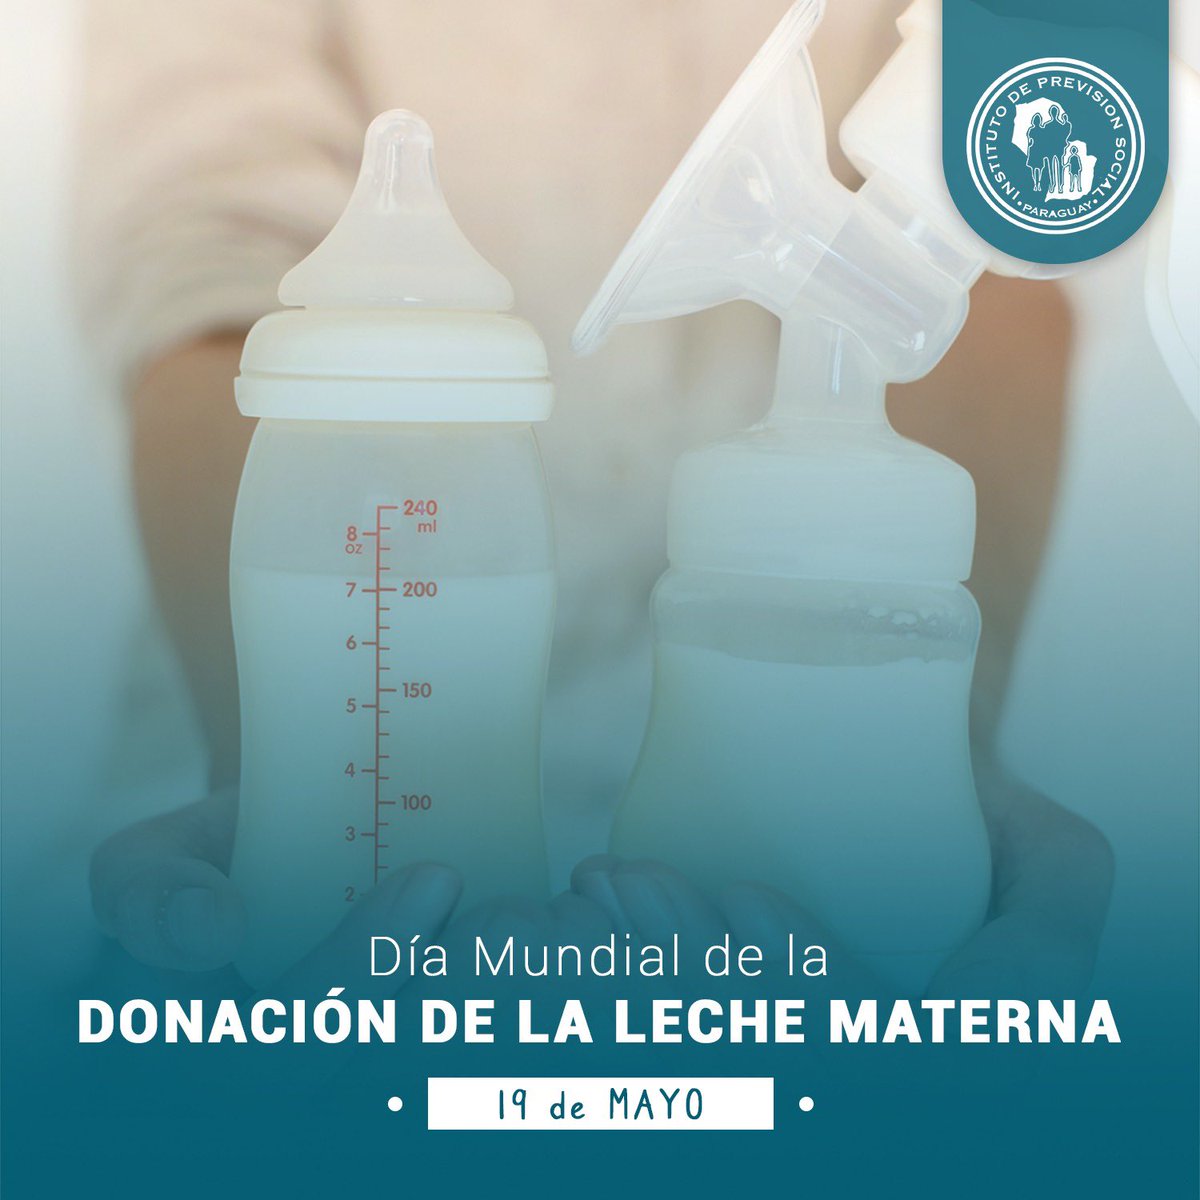 🍼🤱🏻El Día Mundial de la Donación de Leche Humana se celebra el 19 de mayo, conmemorando la 'Carta de Brasilia' firmada en 2005 por 13 países de América Latina y organizaciones como UNICEF y OPS para crear una red de bancos de leche. ℹ️➕ lc.cx/0UP3gJ.